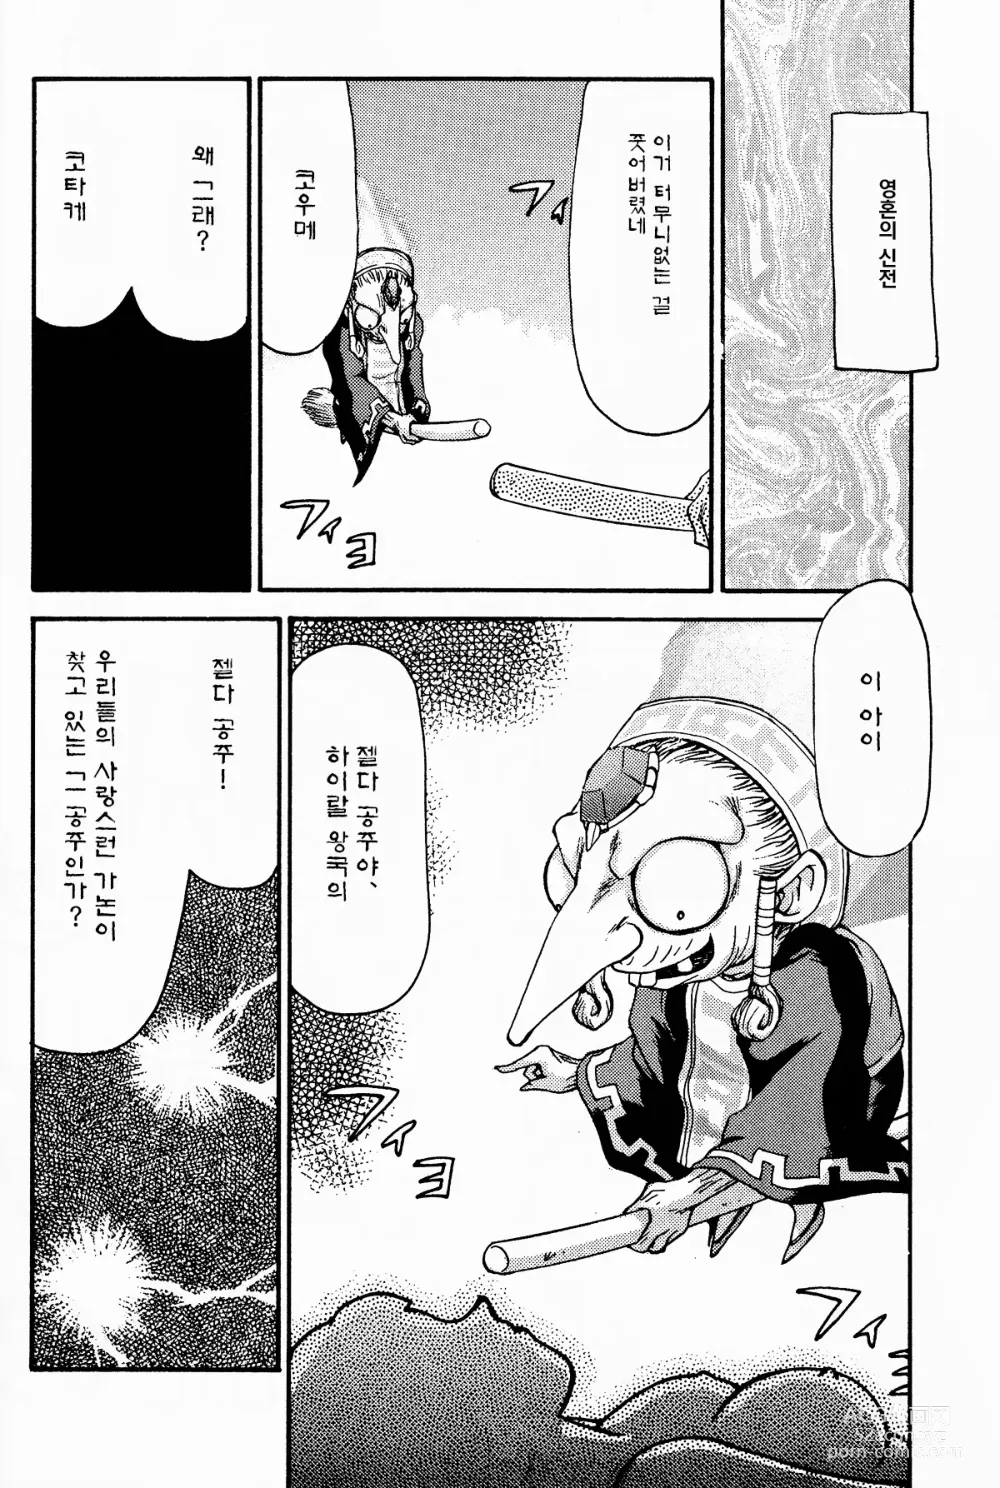 Page 7 of doujinshi NISE Zelda no Densetsu Shinshou